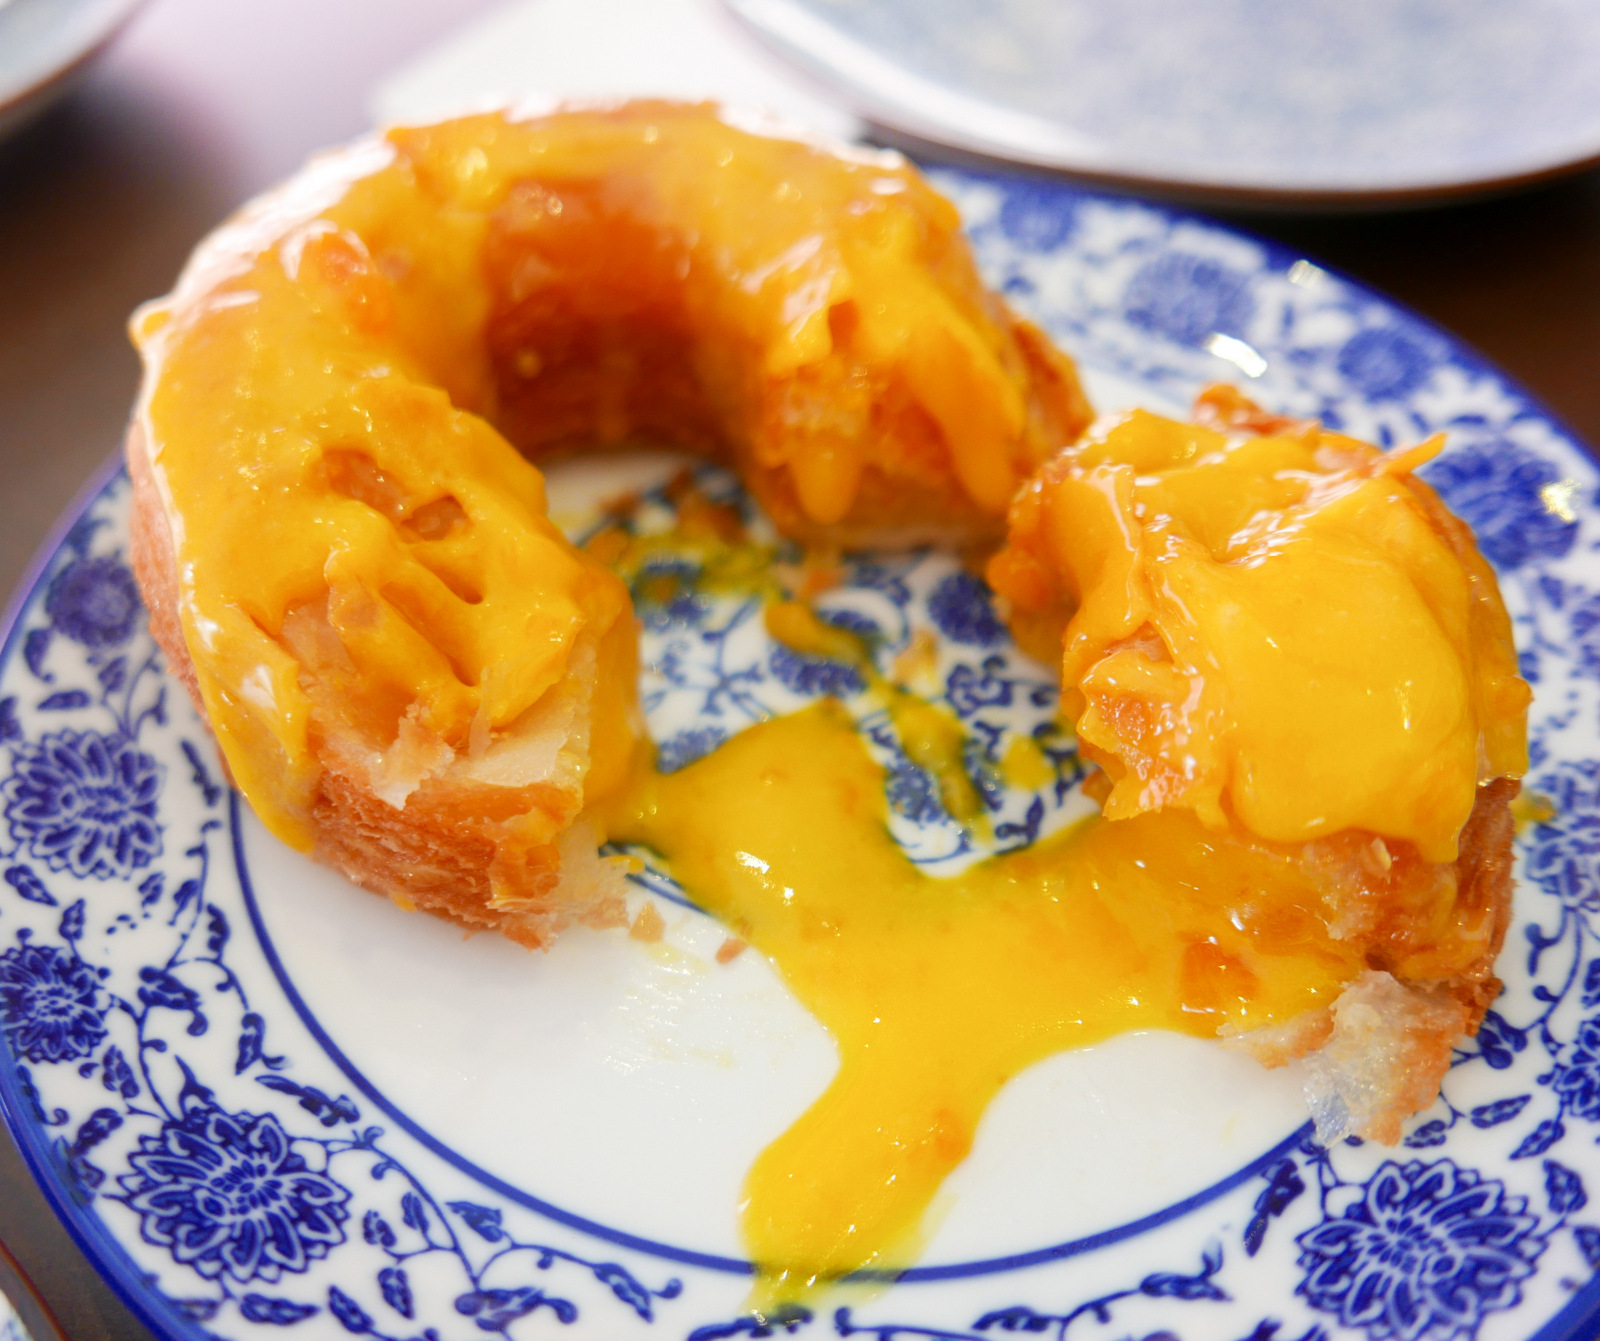 6. Salted egg yolk cronut